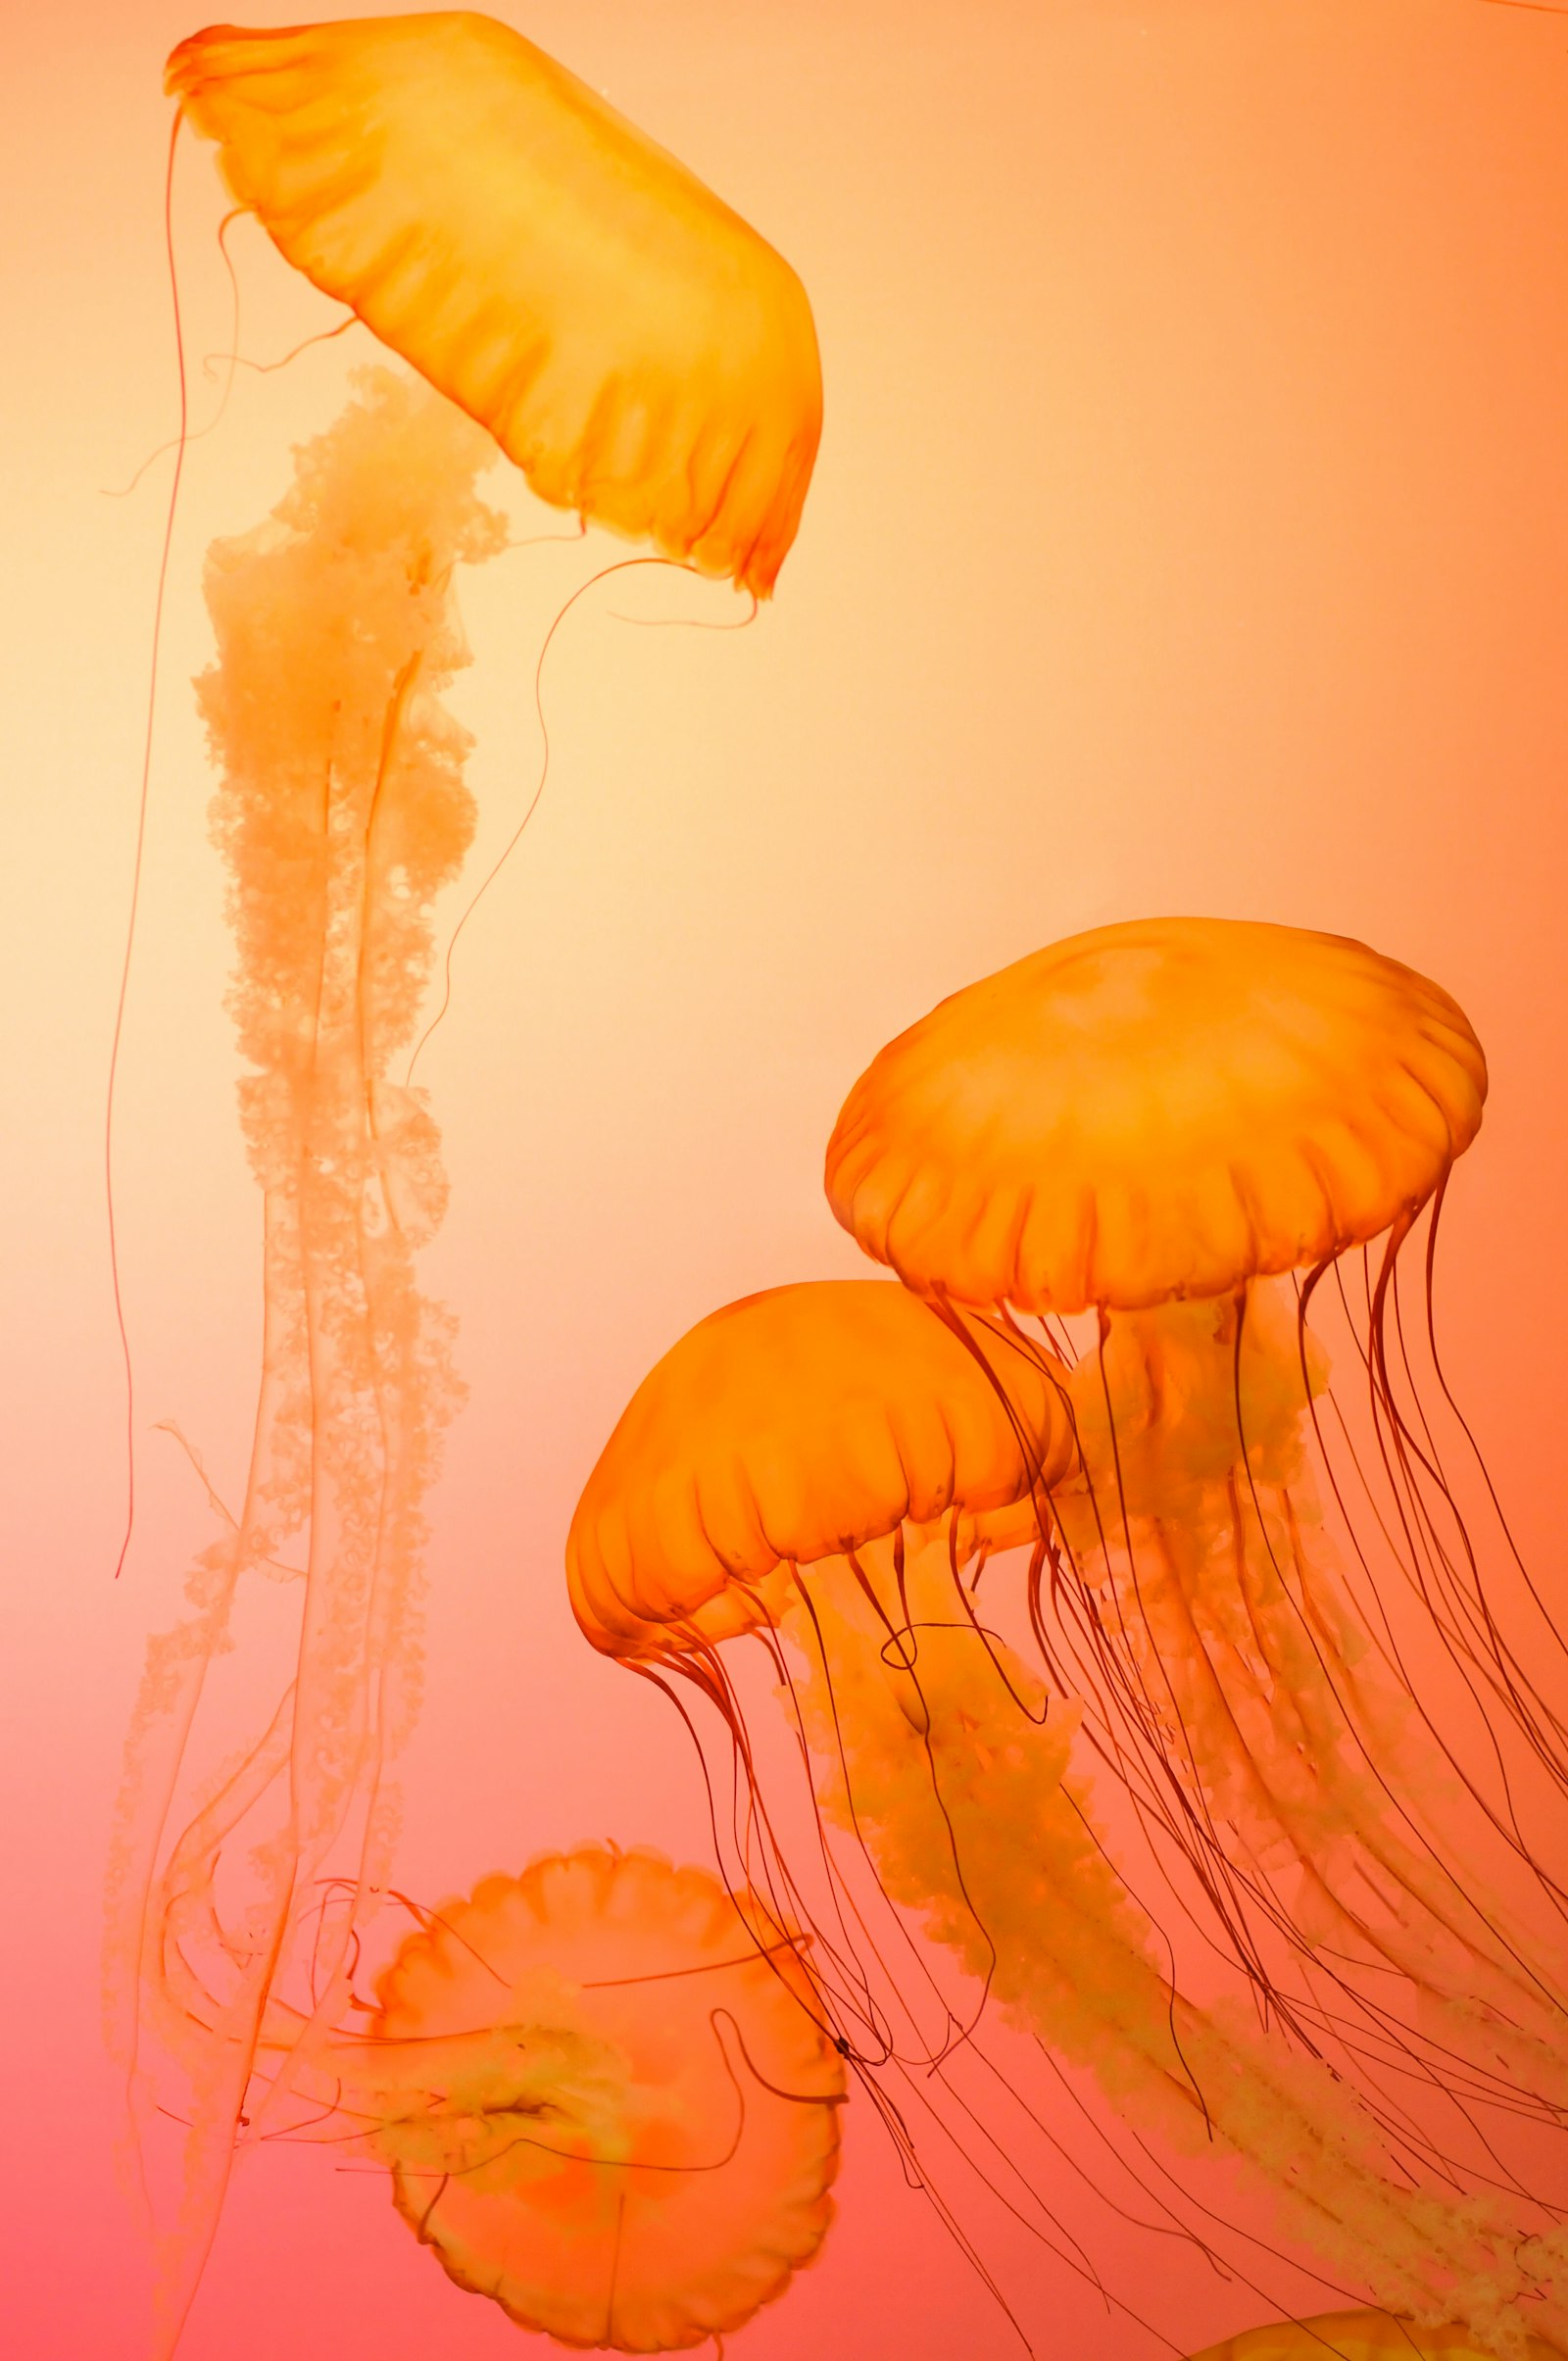 Nikon AF Nikkor 50mm F1.4D sample photo. Four orange jellyfish photography